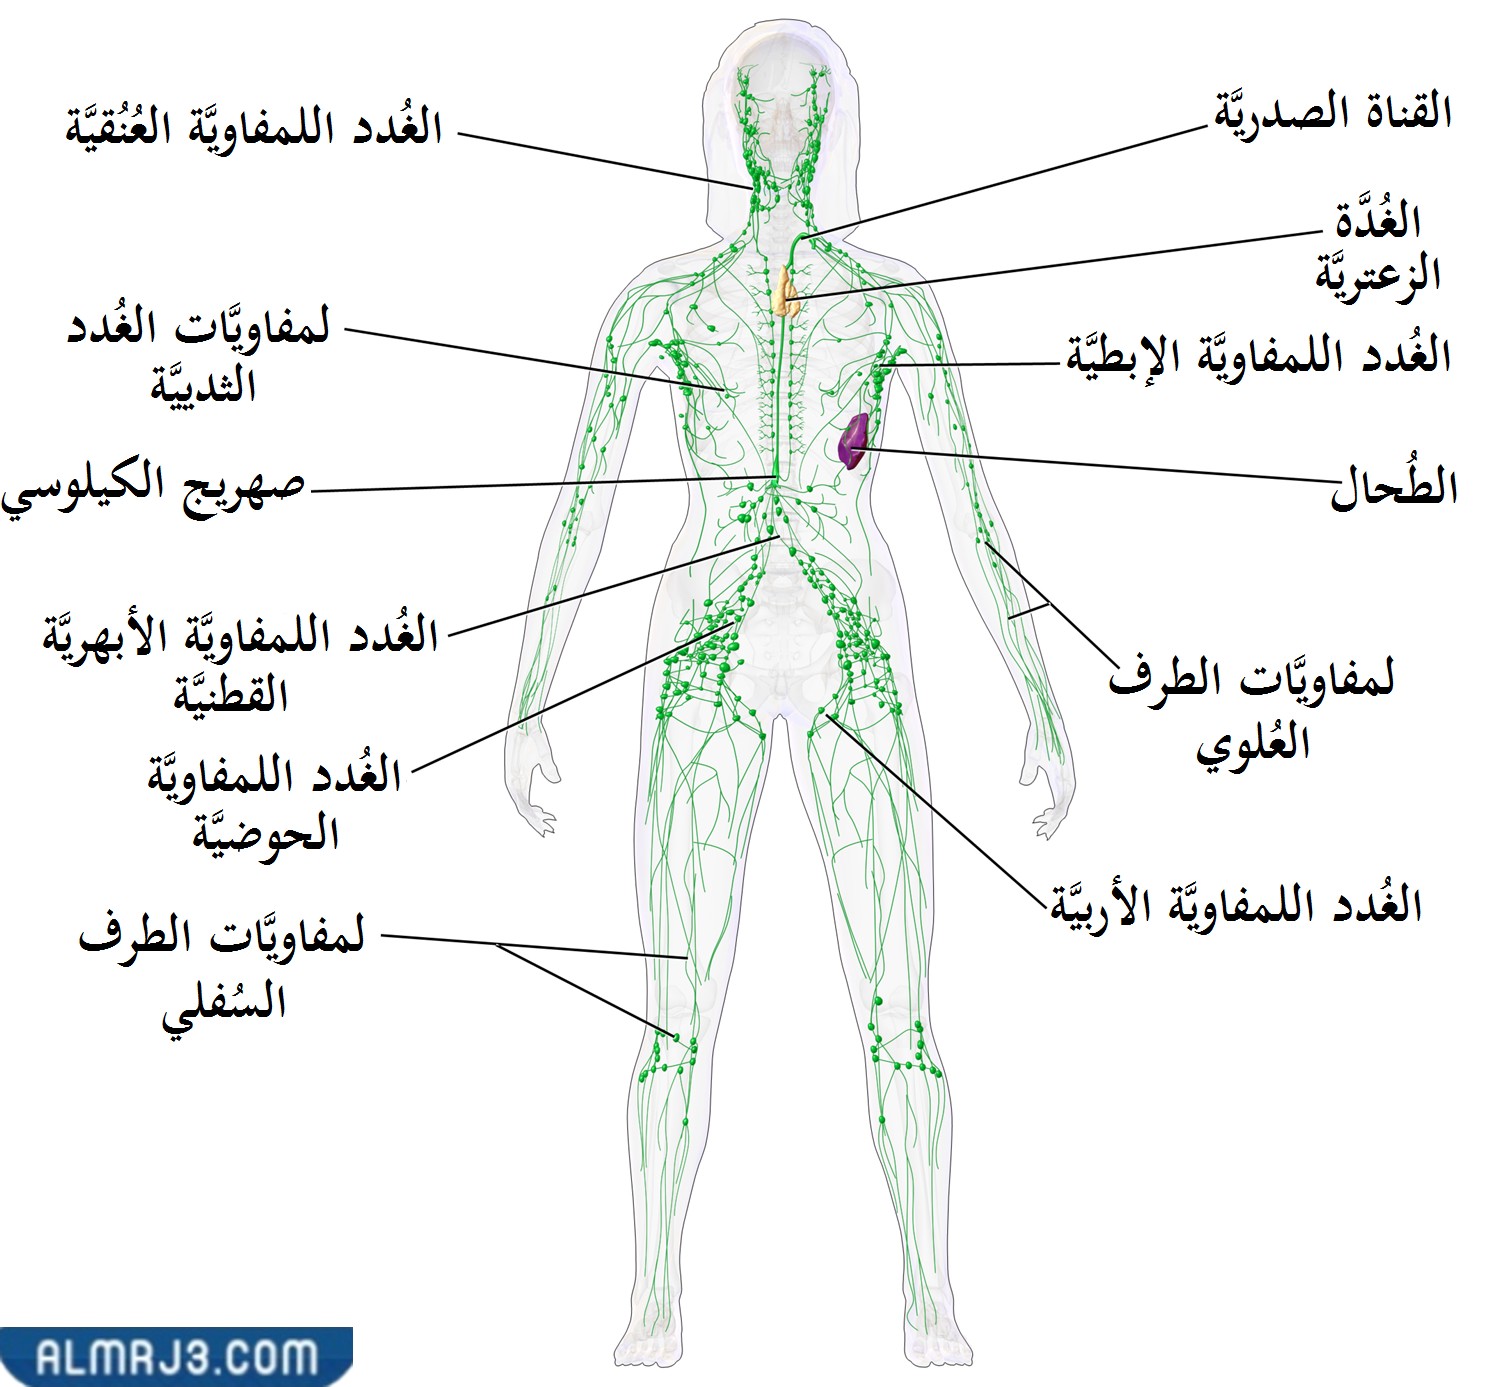 مواقع الغدد الليمفاوية في الجسم